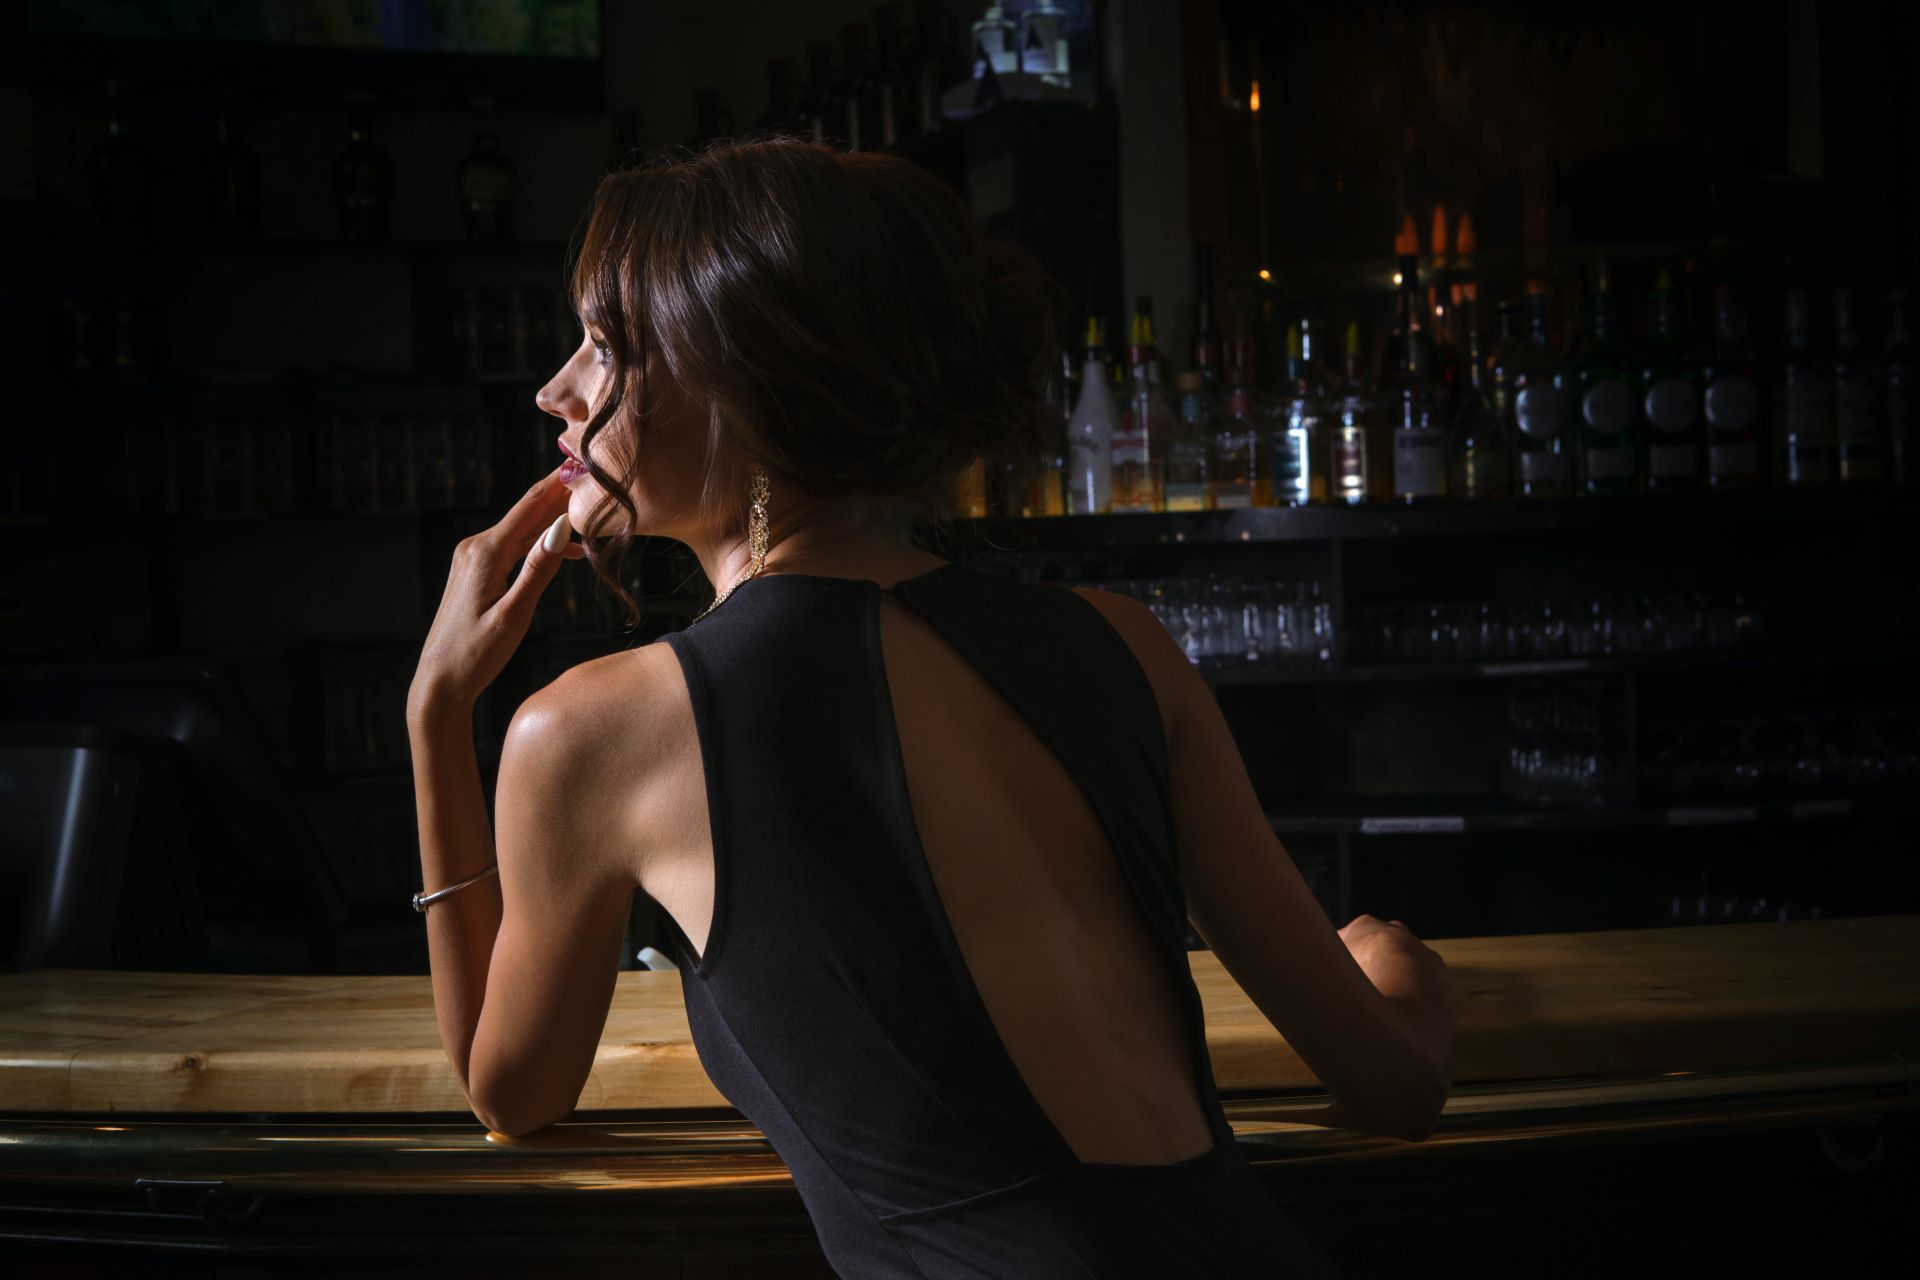 Elegante Frau in schwarzem Kleid an einer Bar, repräsentiert stilvolle Abendbegleitung und VIP Escort Service